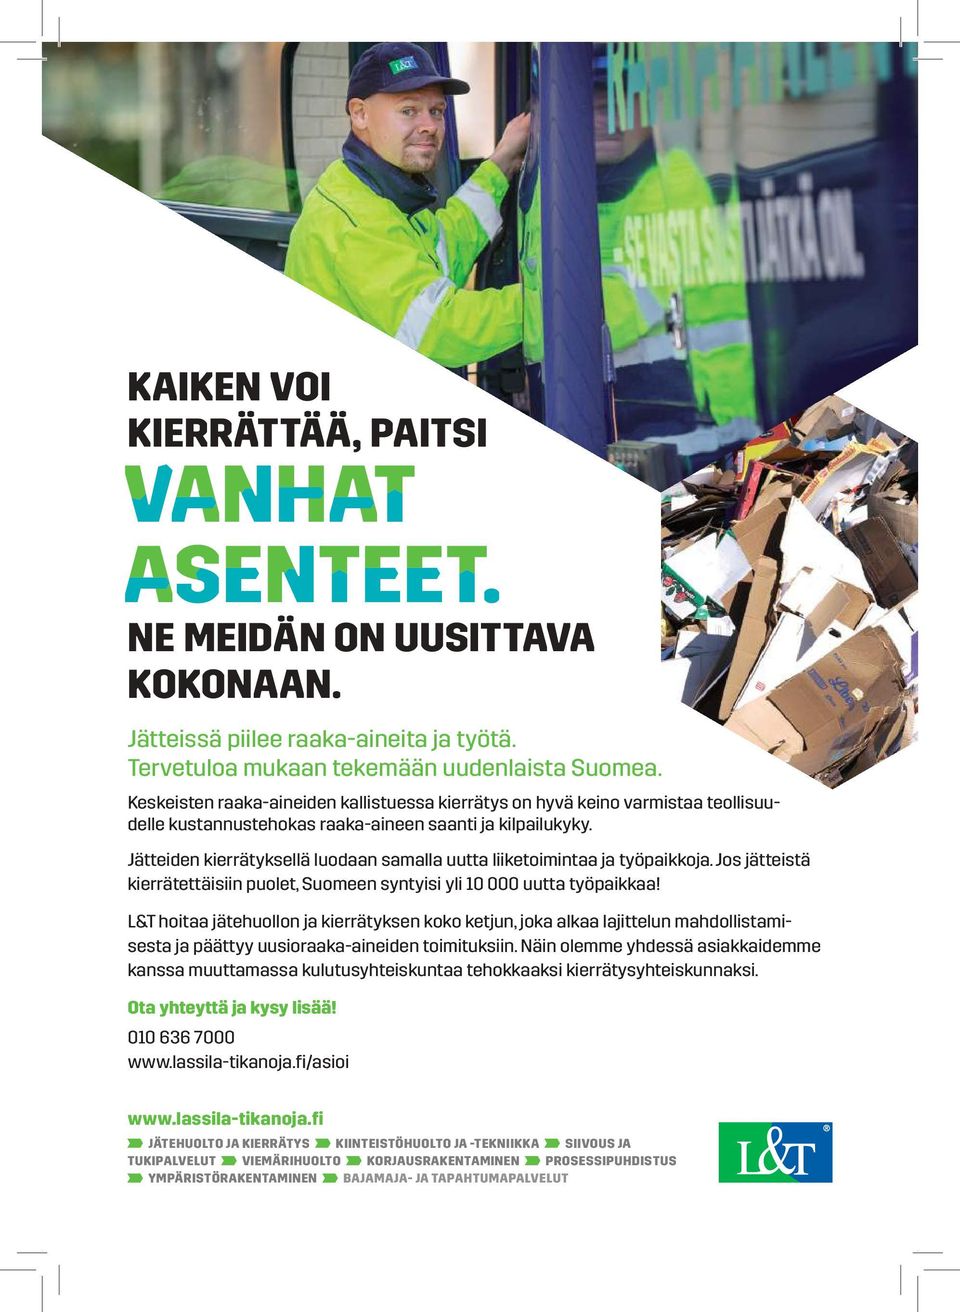 Jätteiden kierrätyksellä luodaan samalla uutta liiketoimintaa ja työpaikkoja. Jos jätteistä kierrätettäisiin puolet, Suomeen syntyisi yli 10 000 uutta työpaikkaa!